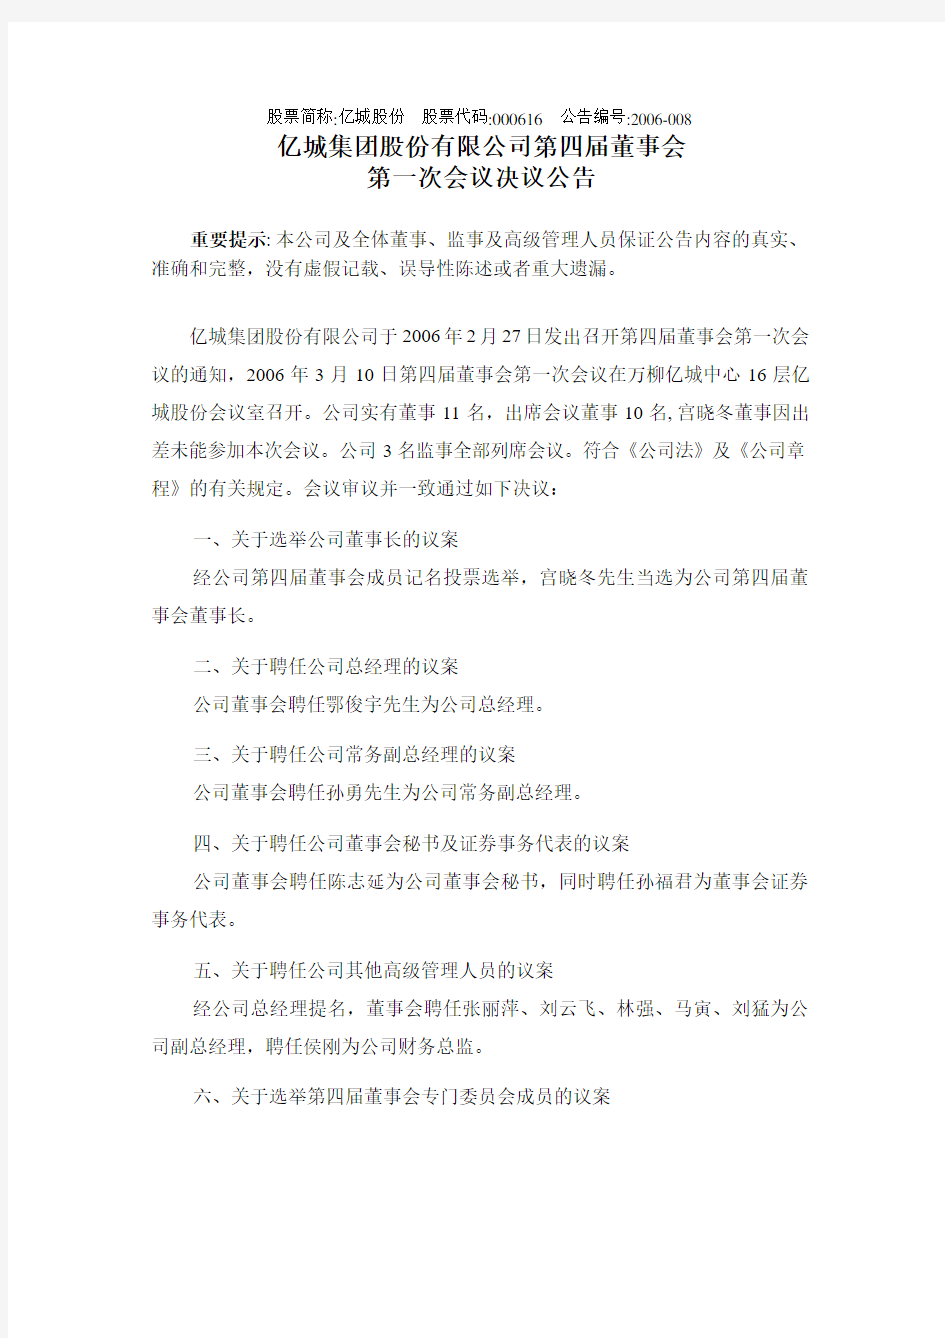 亿城集团股份有限公司第四届董事会第一次会议决议公告